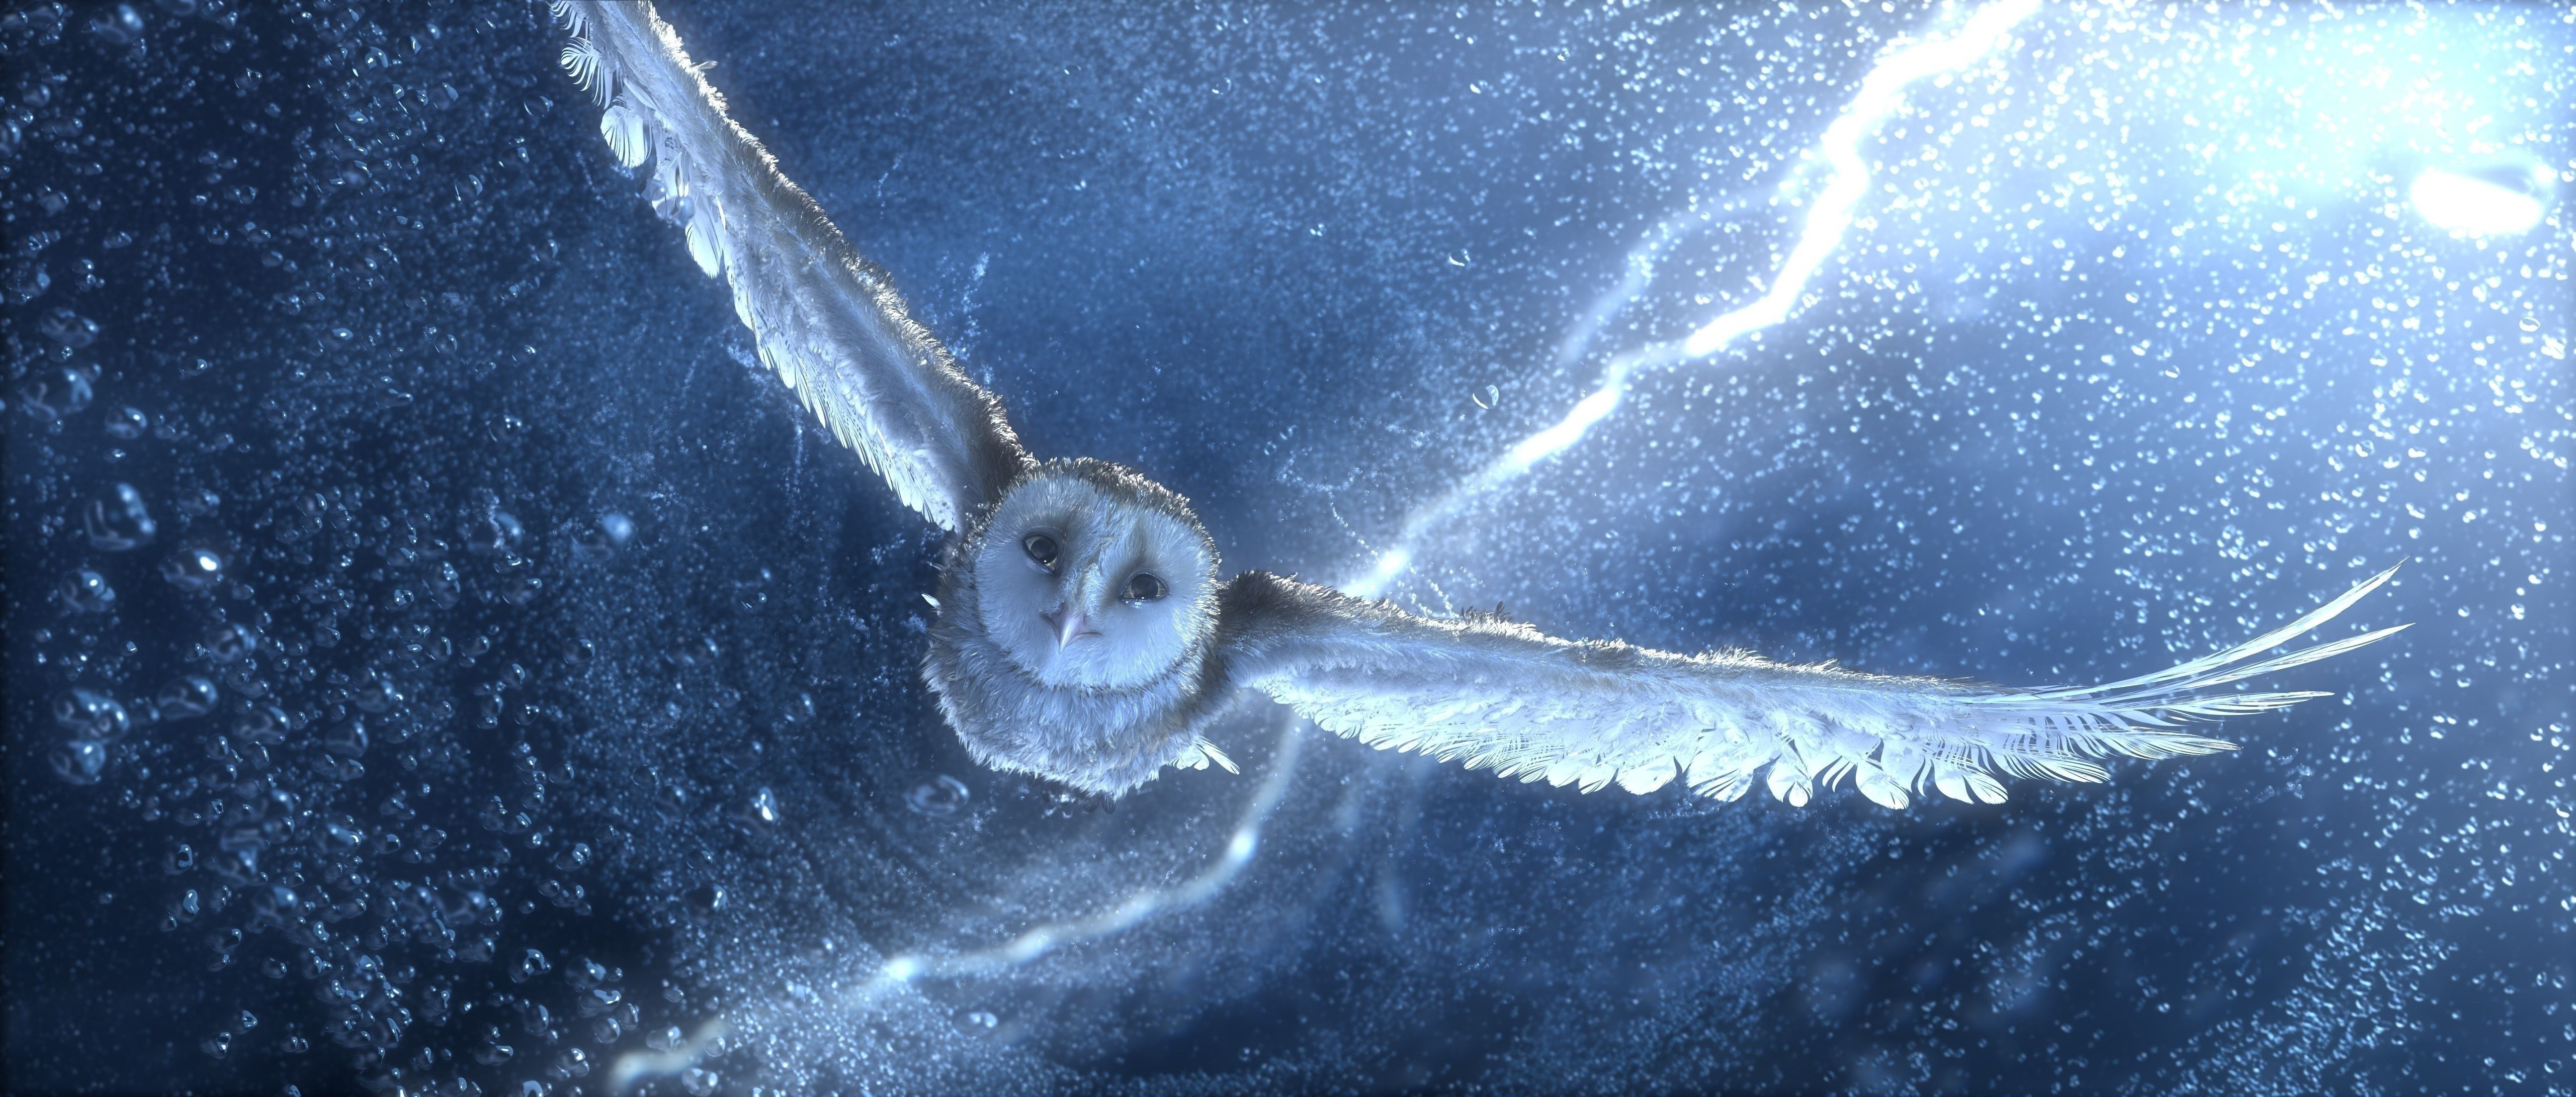 Hedwig Wallpaper